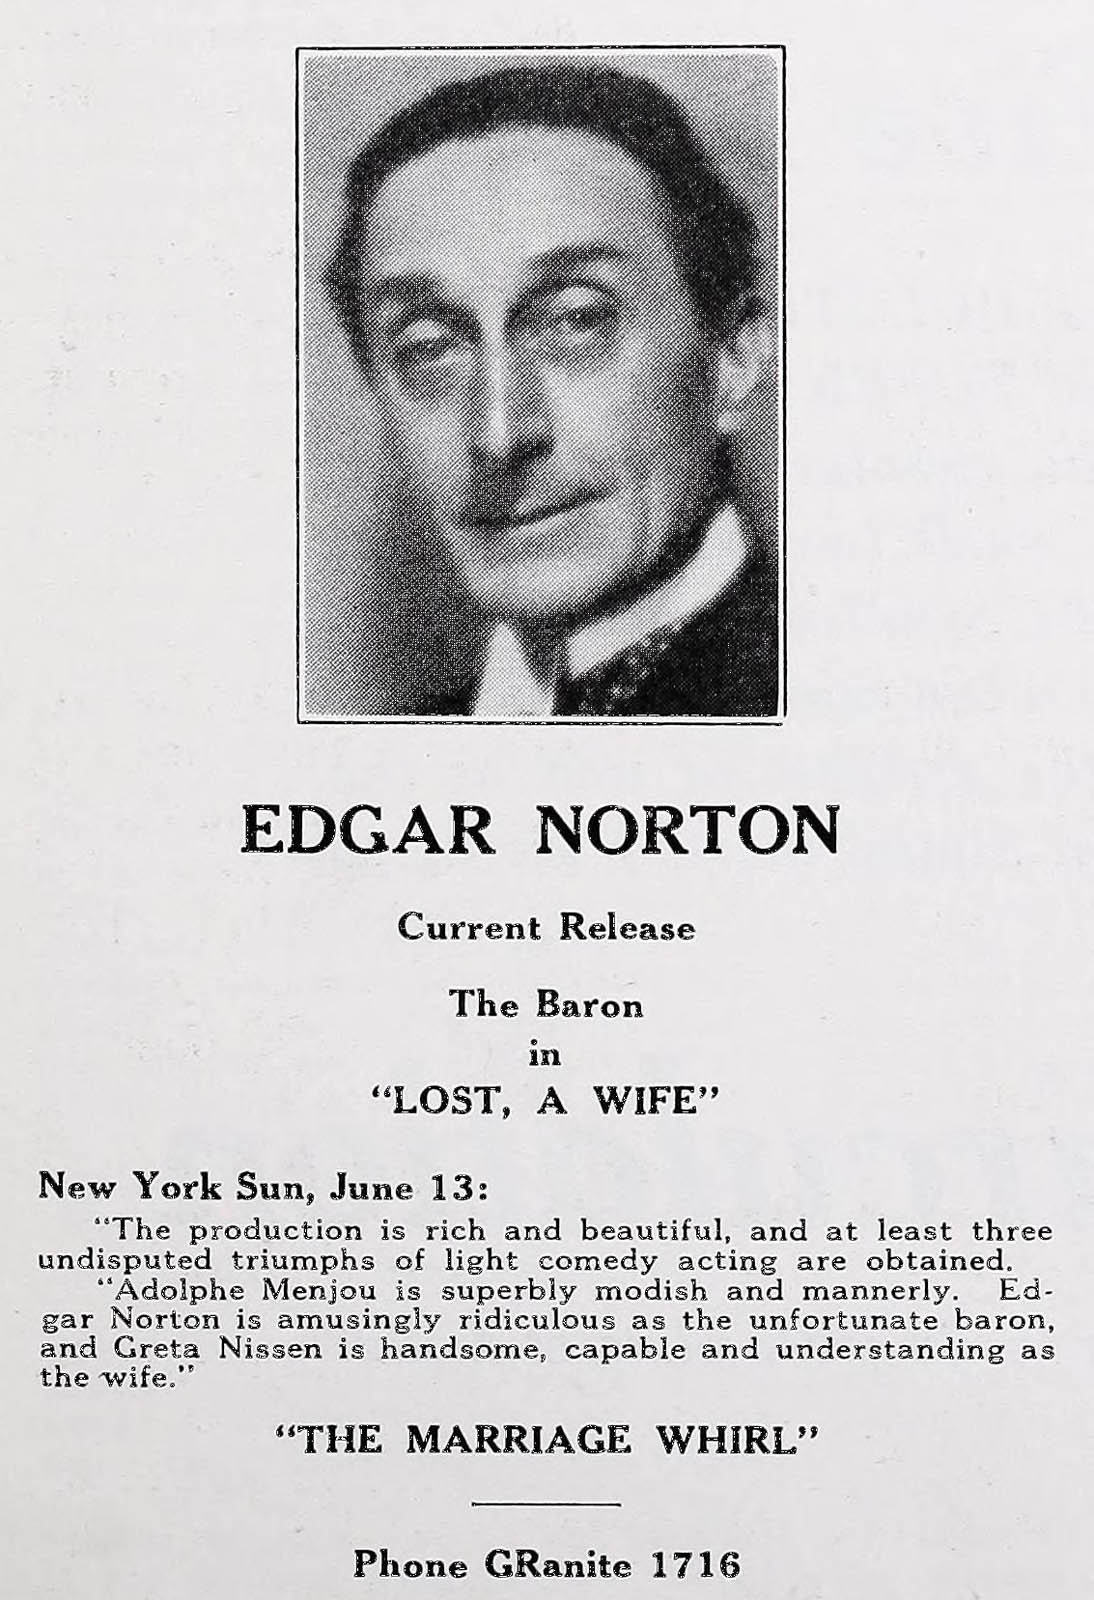 Edgar Norton